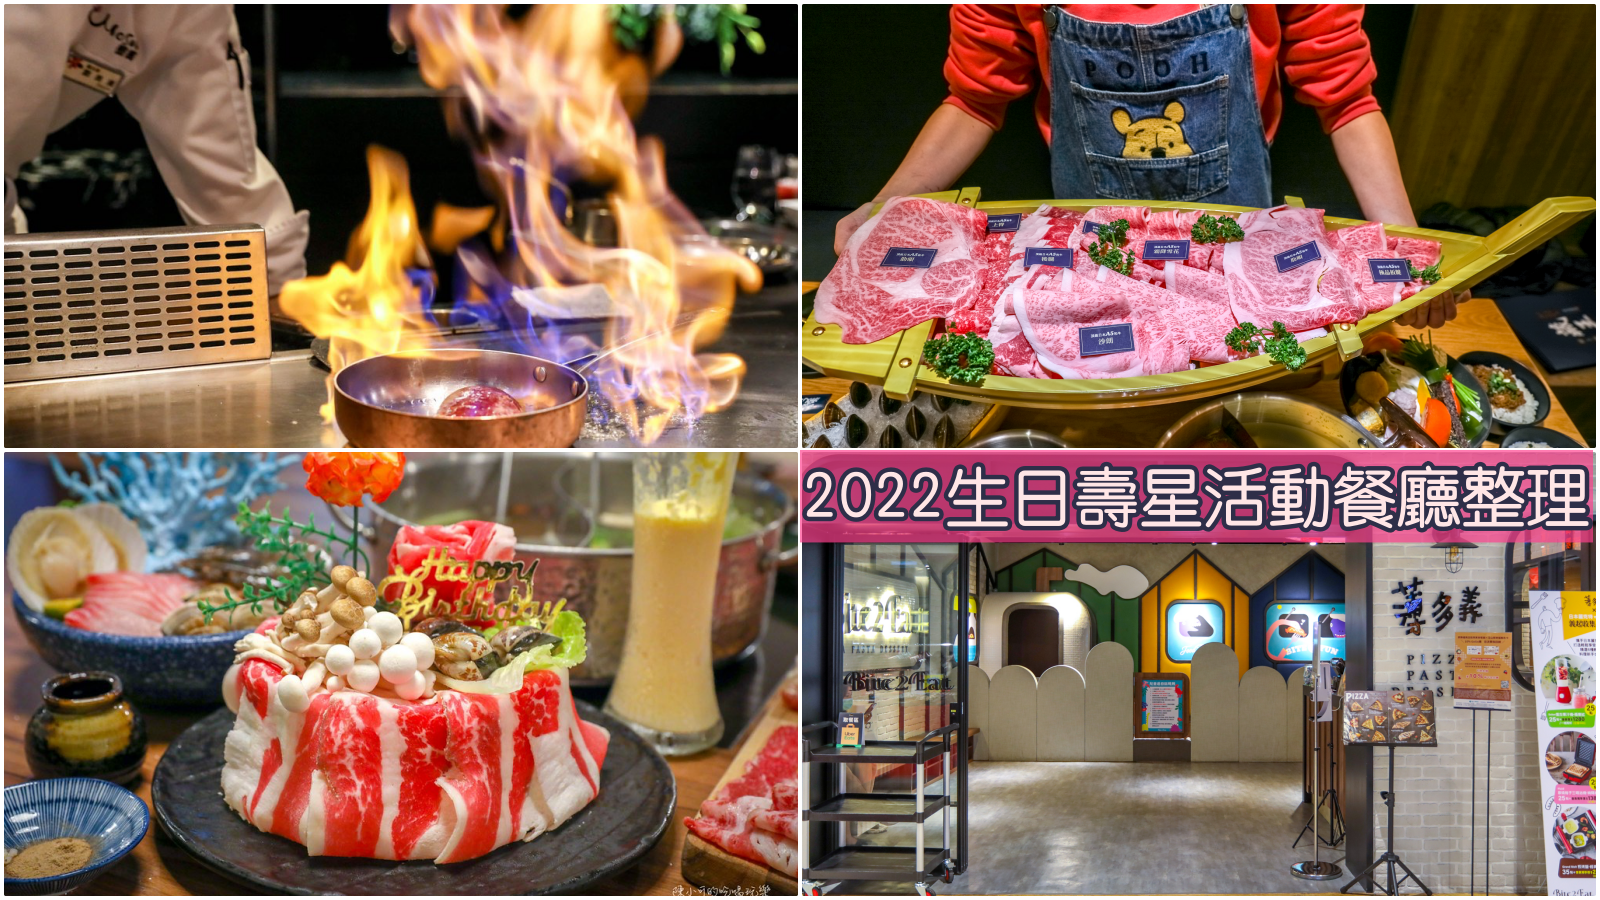 【2022年壽星生日優惠】台北 新北市餐廳生日壽星活動整理推薦